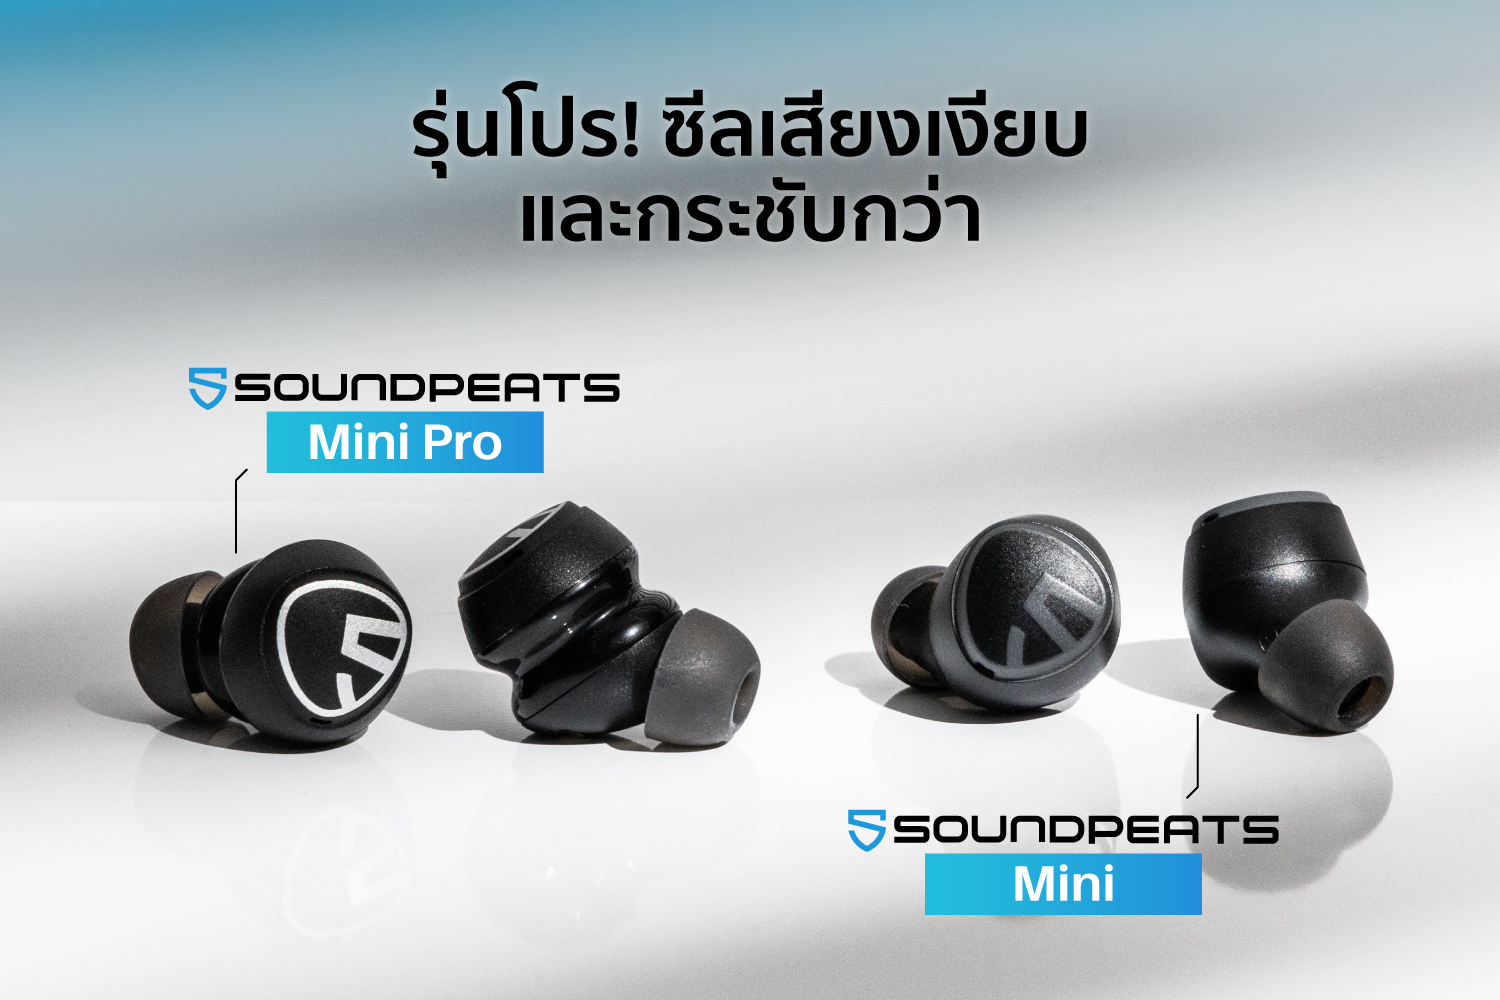 หูฟังไร้สาย,True Wireless,soundpeats mini,soundpeats mini pro,หูฟังบลูทูธ,soundpeats ดีไหม,รุ่นไหนดี,เปรียบเทียบหูฟัง